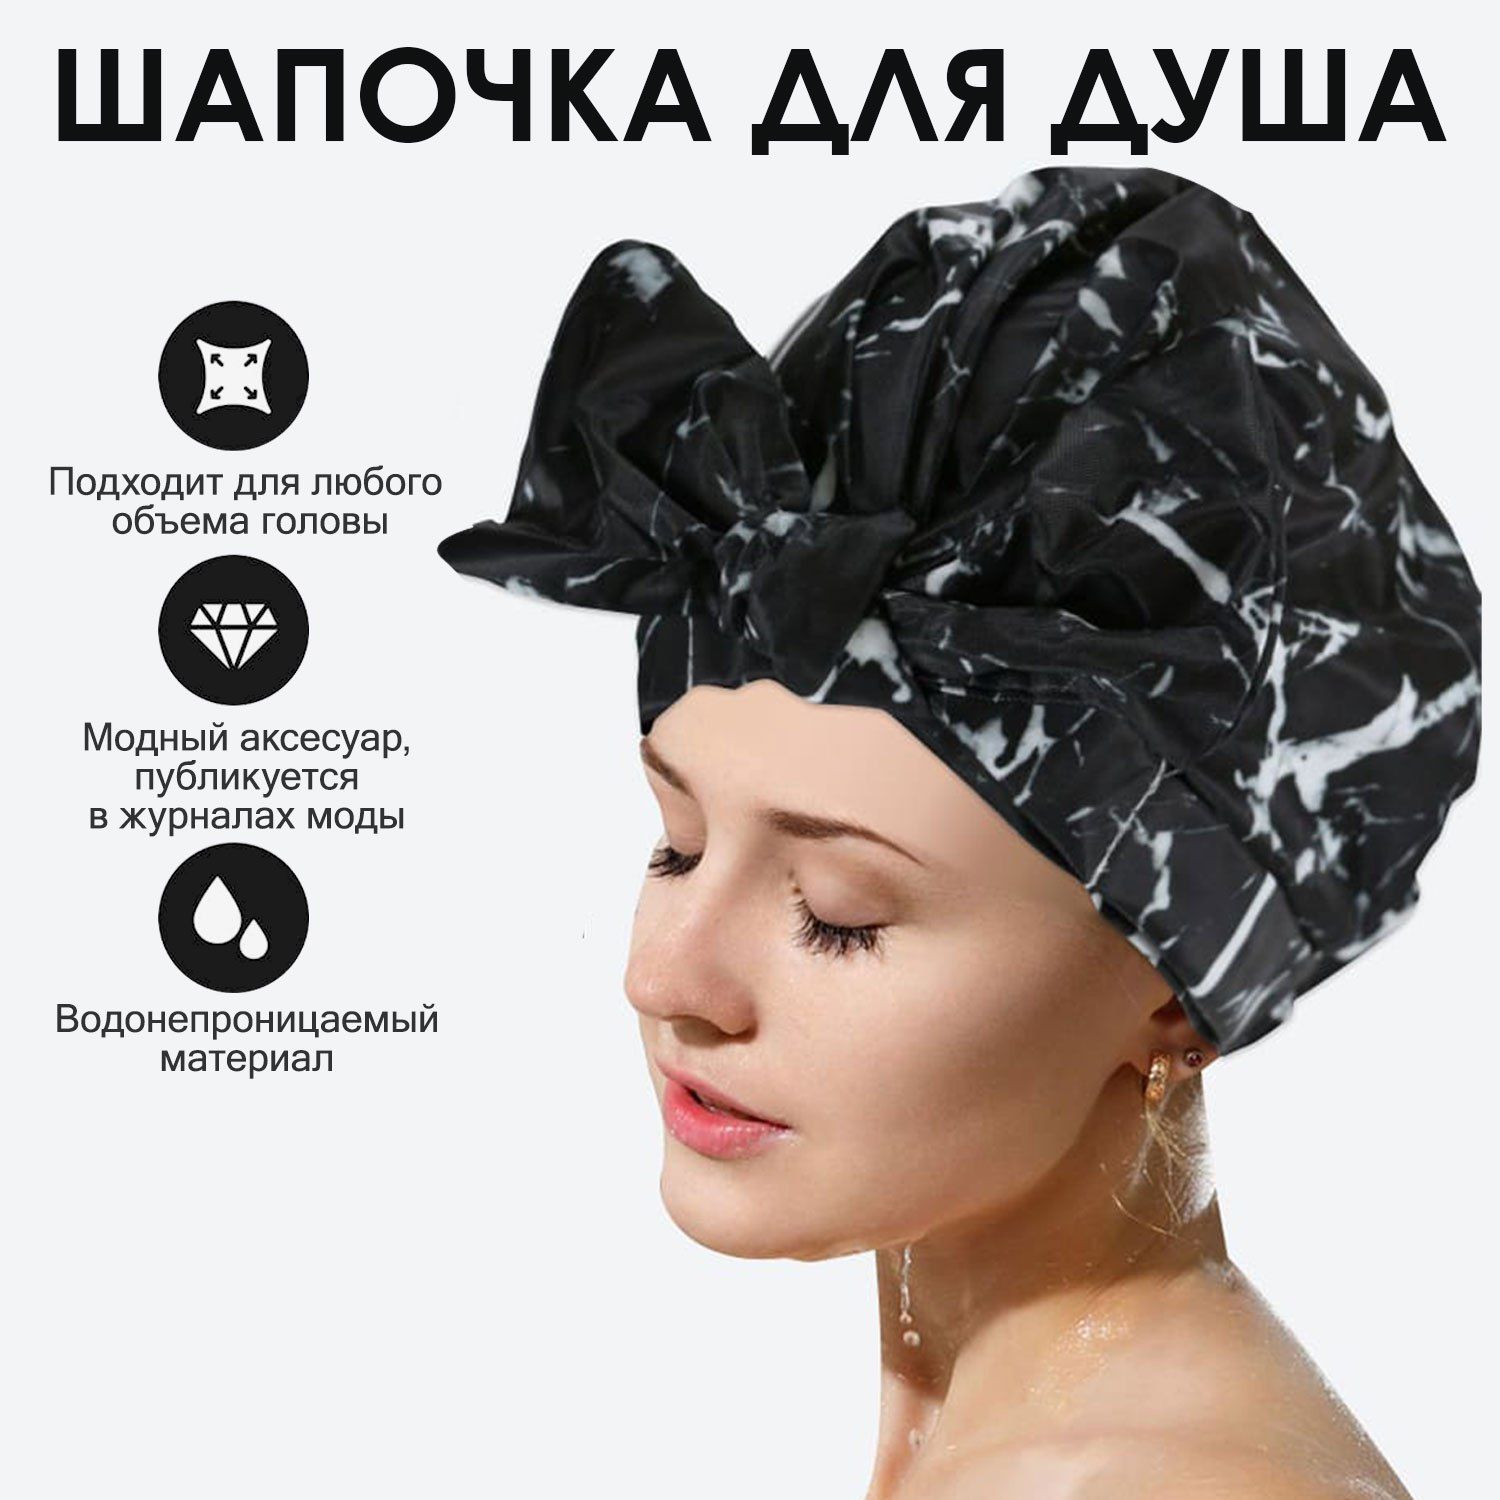 Купить шапочку после химиотерапии в Москве в интернет-магазине